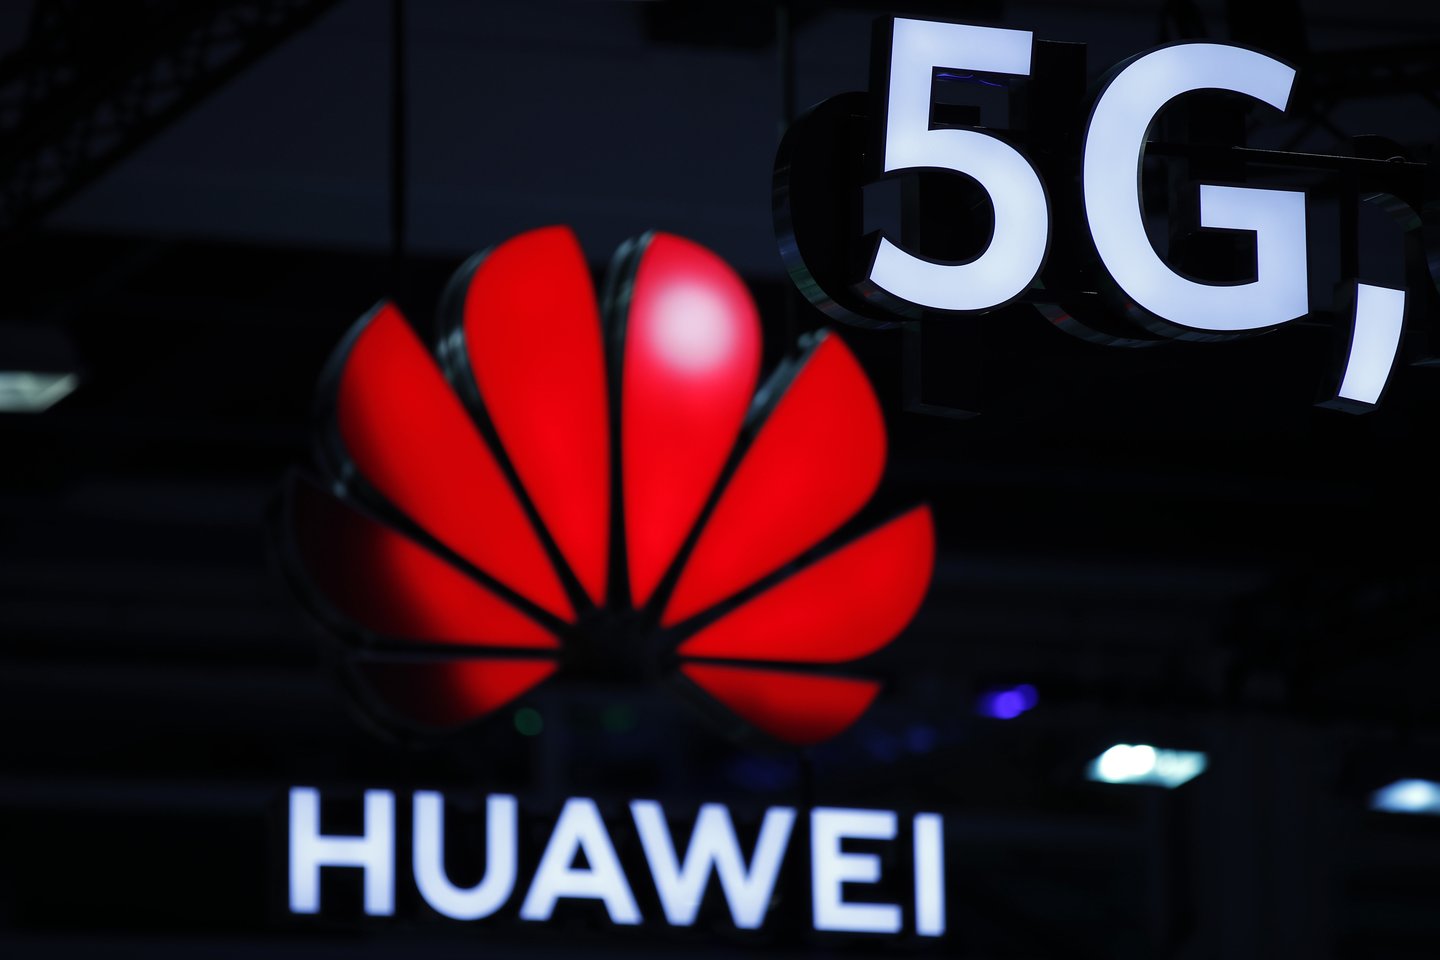  Vokietija nedraus Kinijos technologijų milžinei „Huawei“ diegti naujos kartos 5G ryšio šalyje.<br> AFP / Scanpix nuotr.